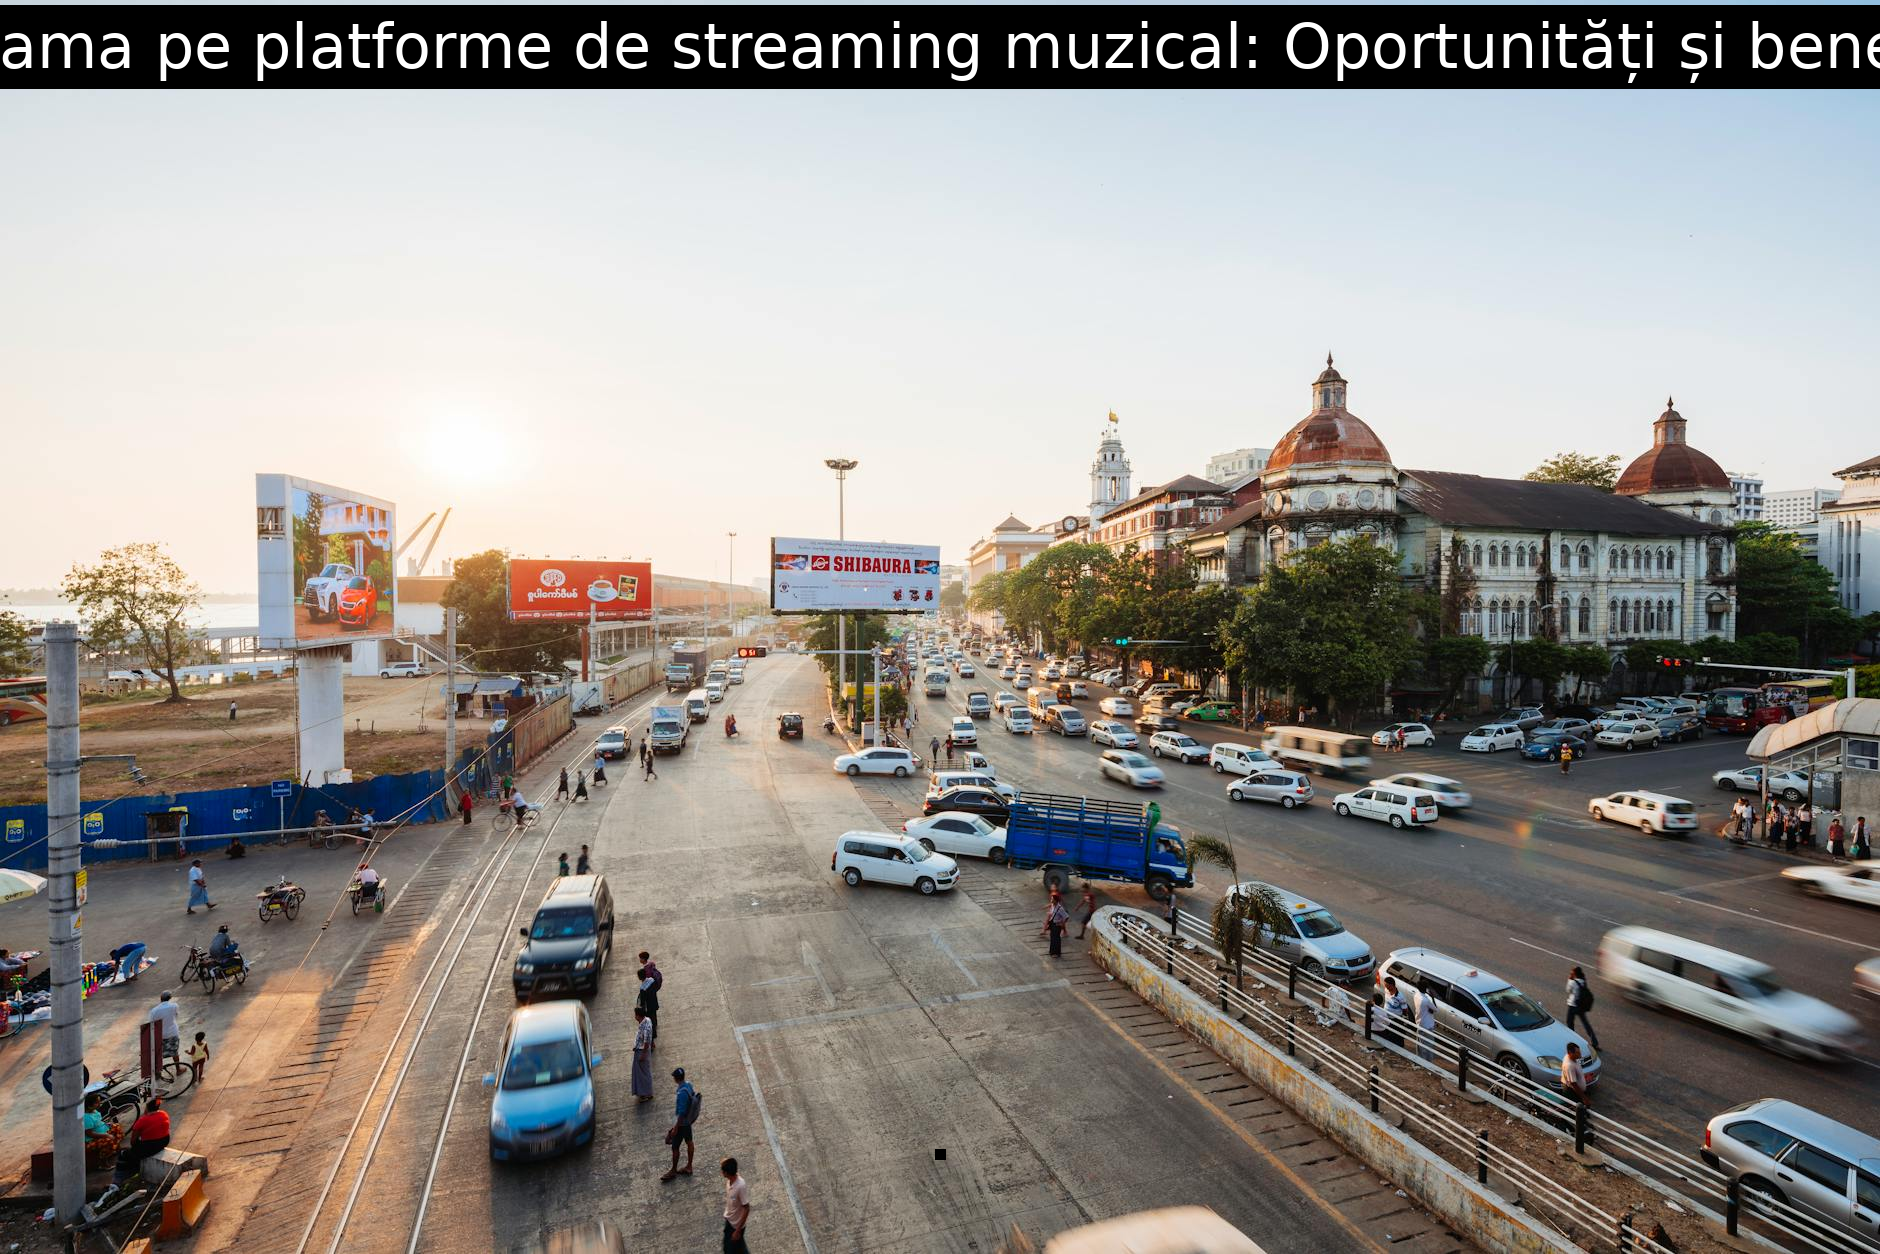 Reclama pe platforme de streaming muzical: Oportunități și beneficii